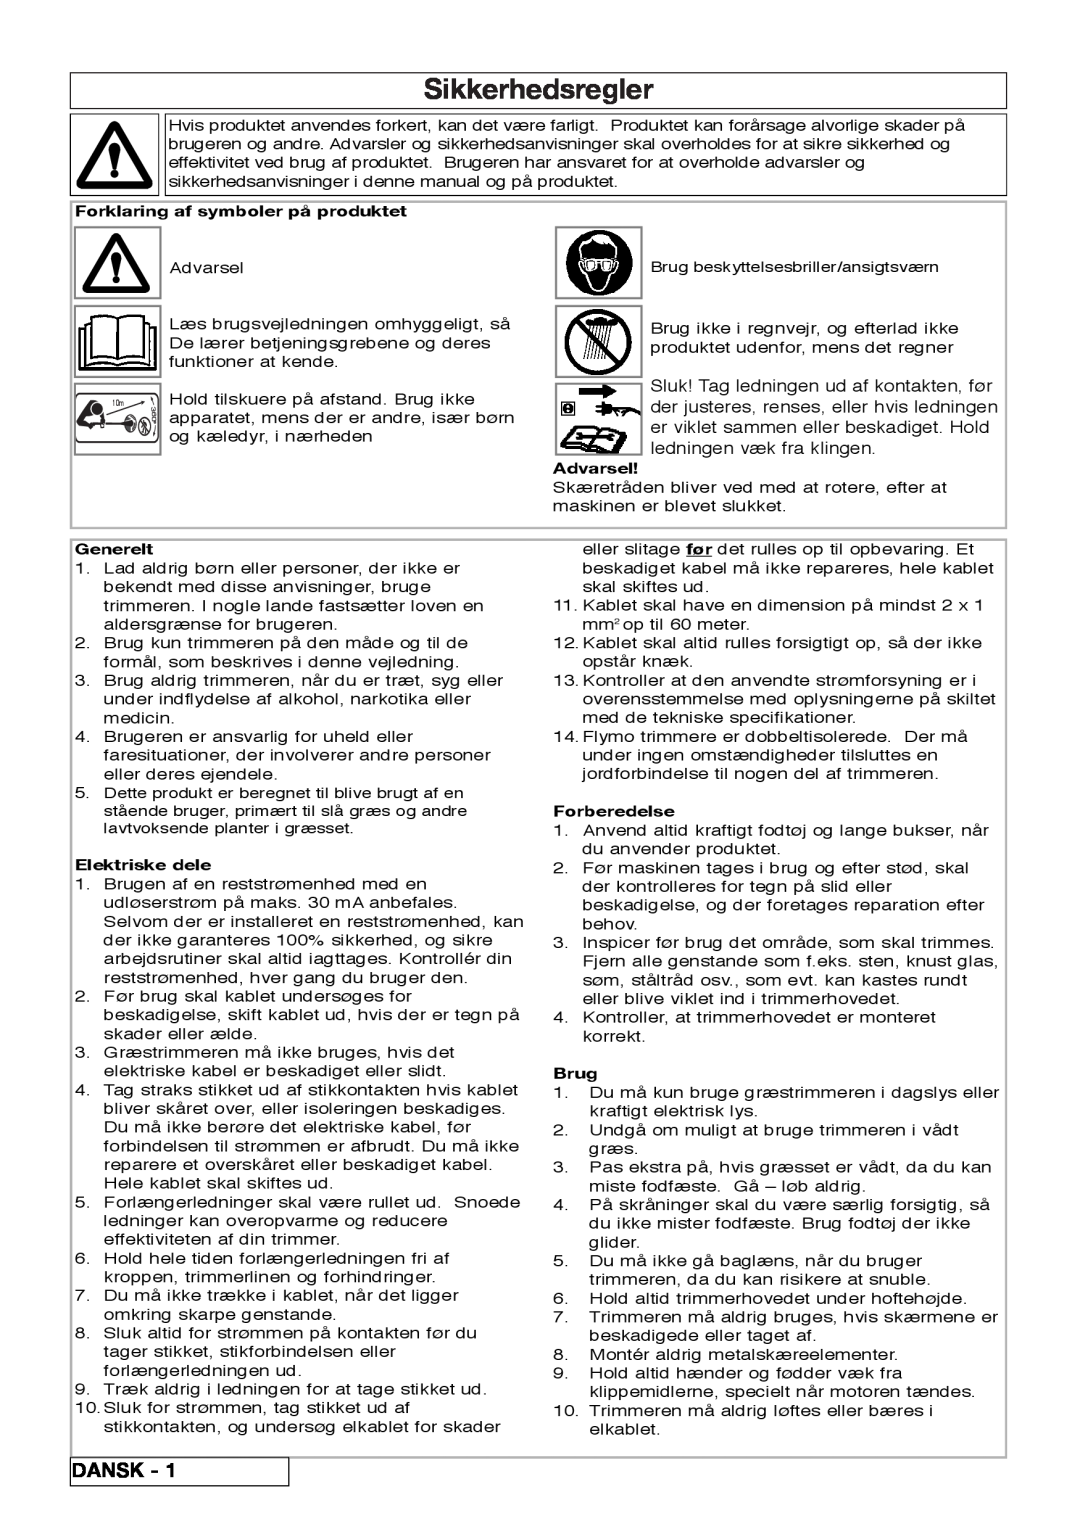 Flymo 800/1000 Sikkerhedsregler, Dansk, Forklaring af symboler på produktet, Advarsel, Generelt, Elektriske dele, Brug 